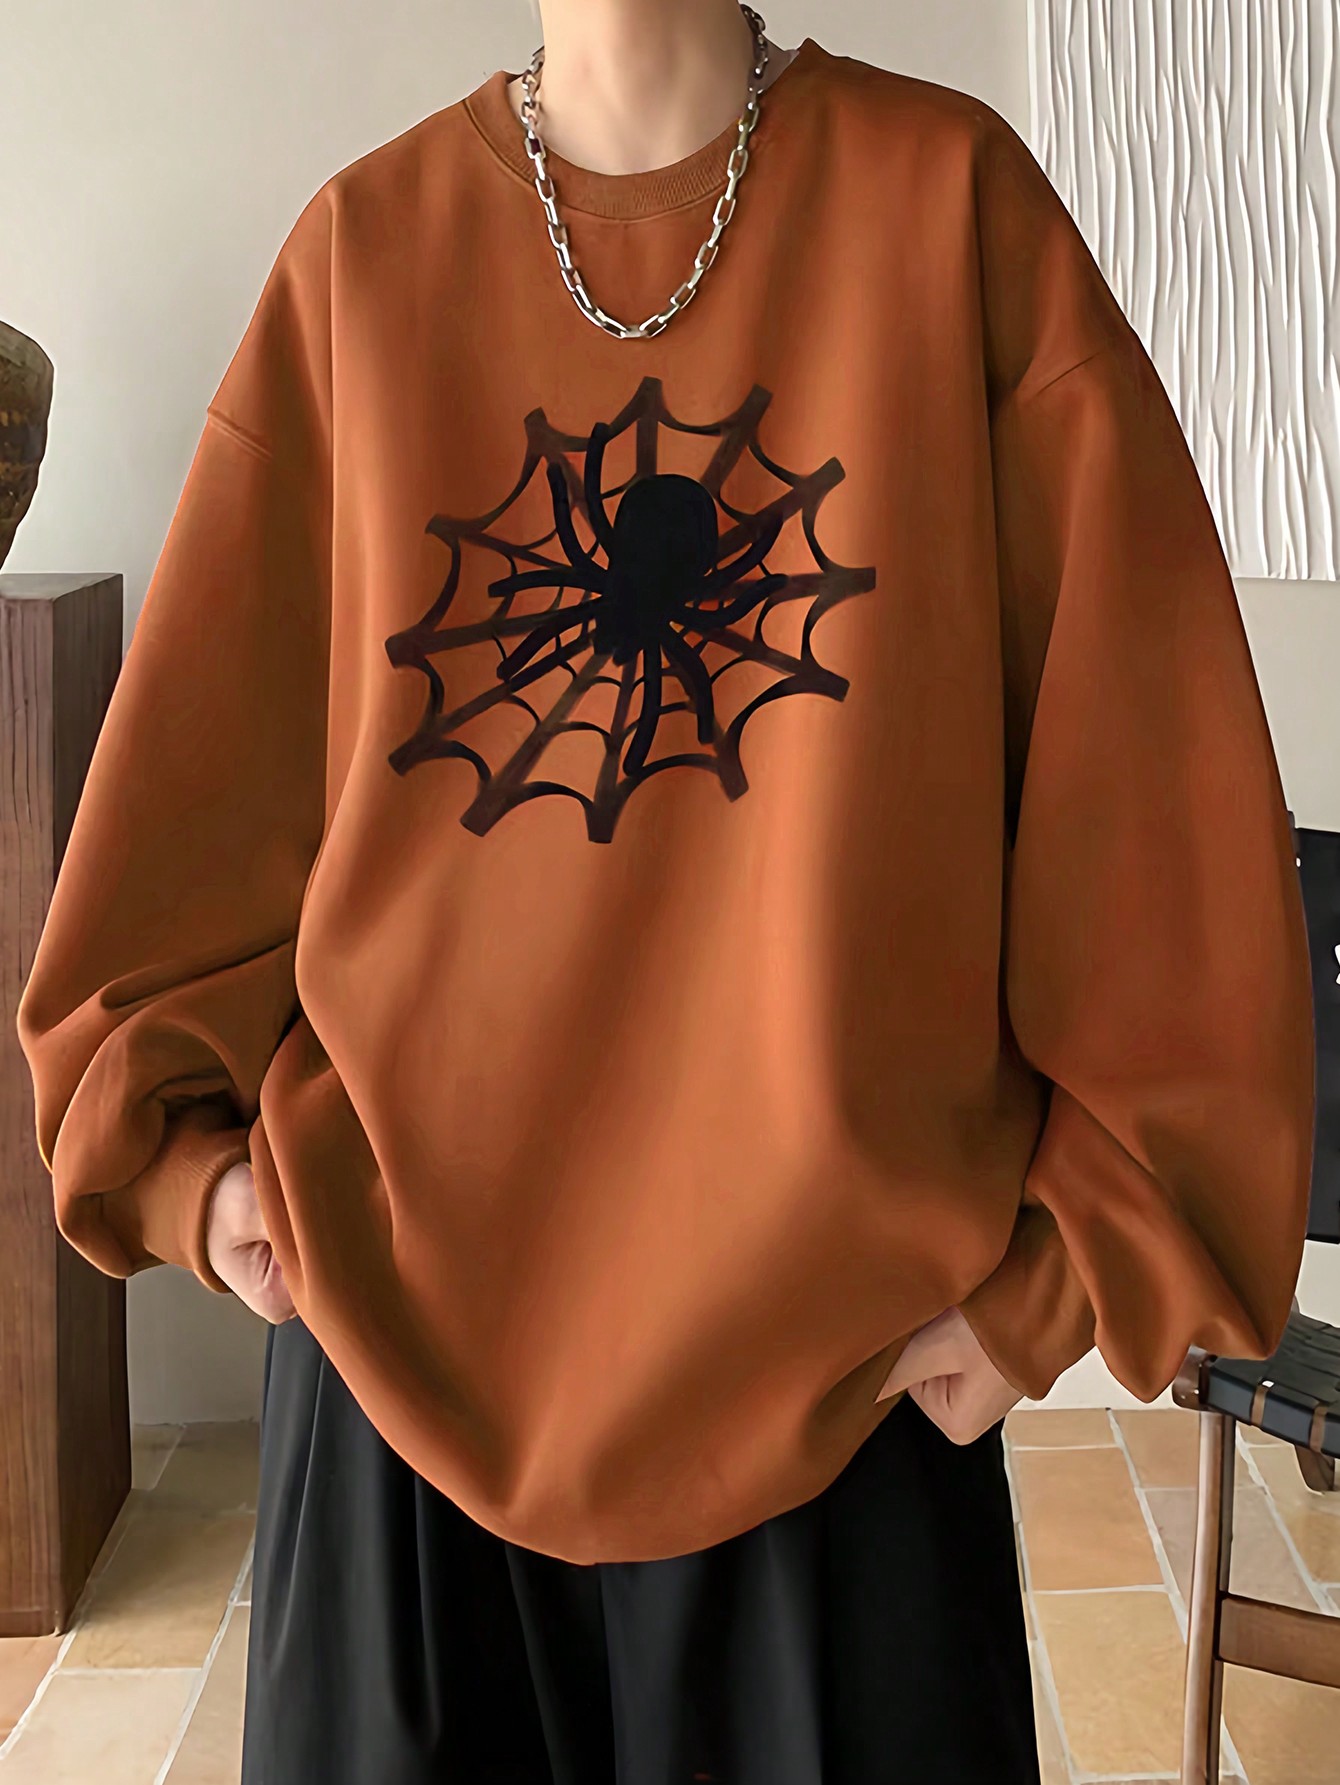 Manfinity EMRG Мужской пуловер свободного кроя с принтом паутины и заниженными плечами, апельсин